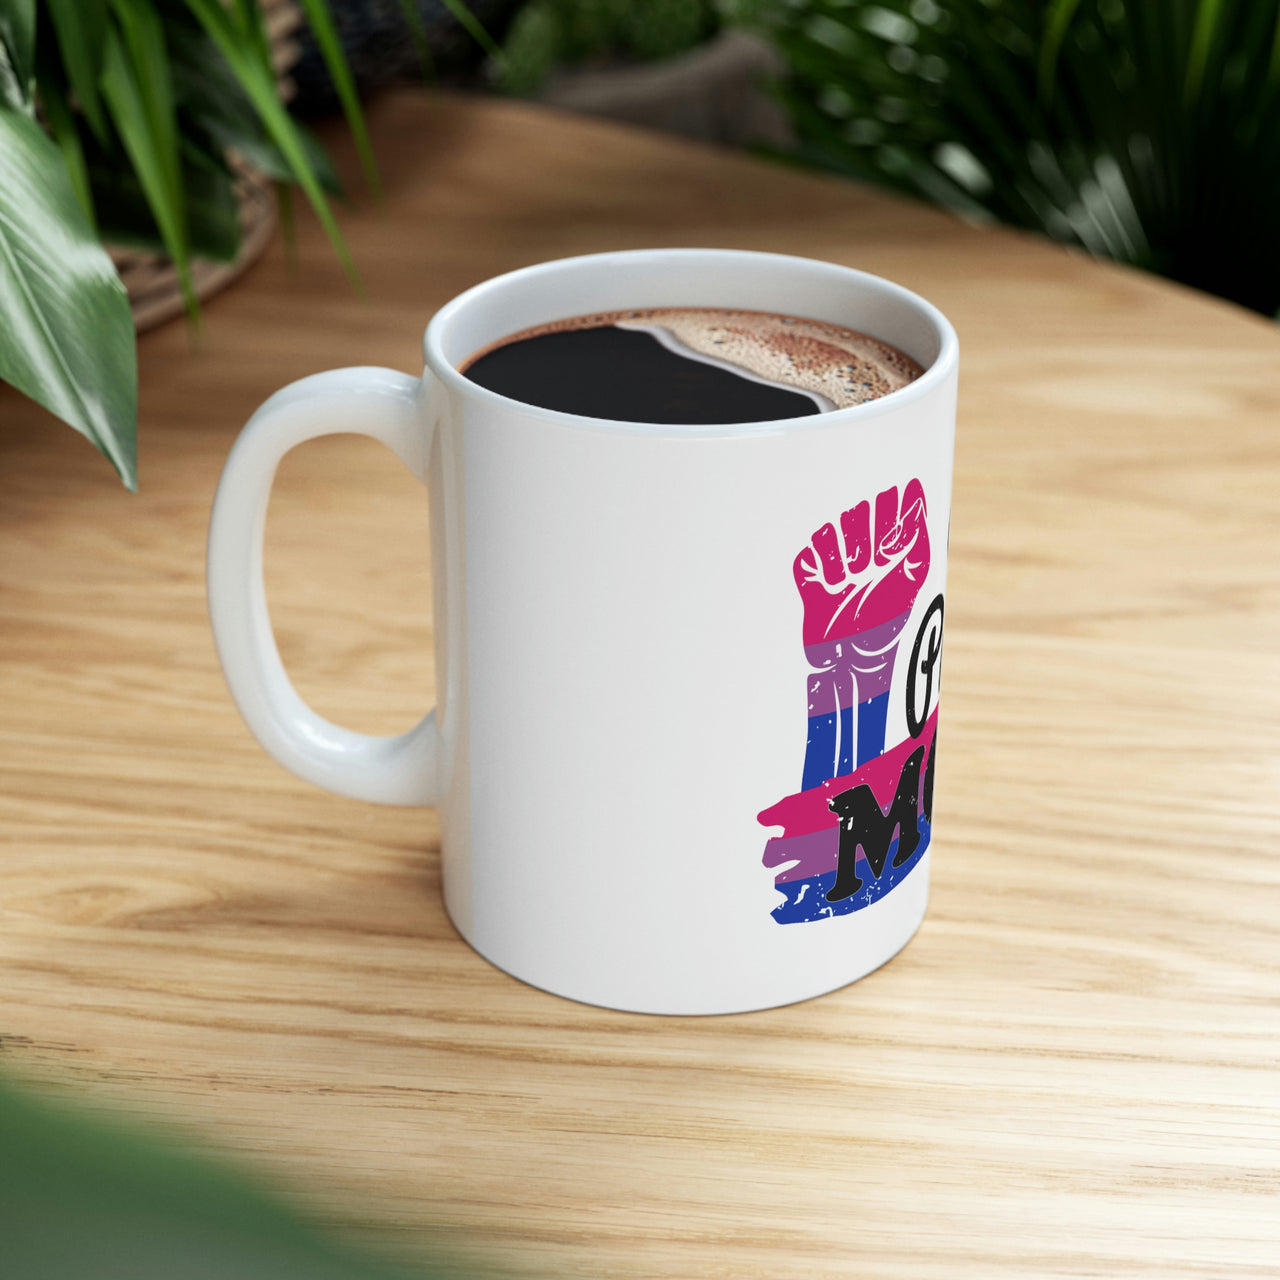 Bisexual Flag Ceramic Mug  - Proud Mom Printify